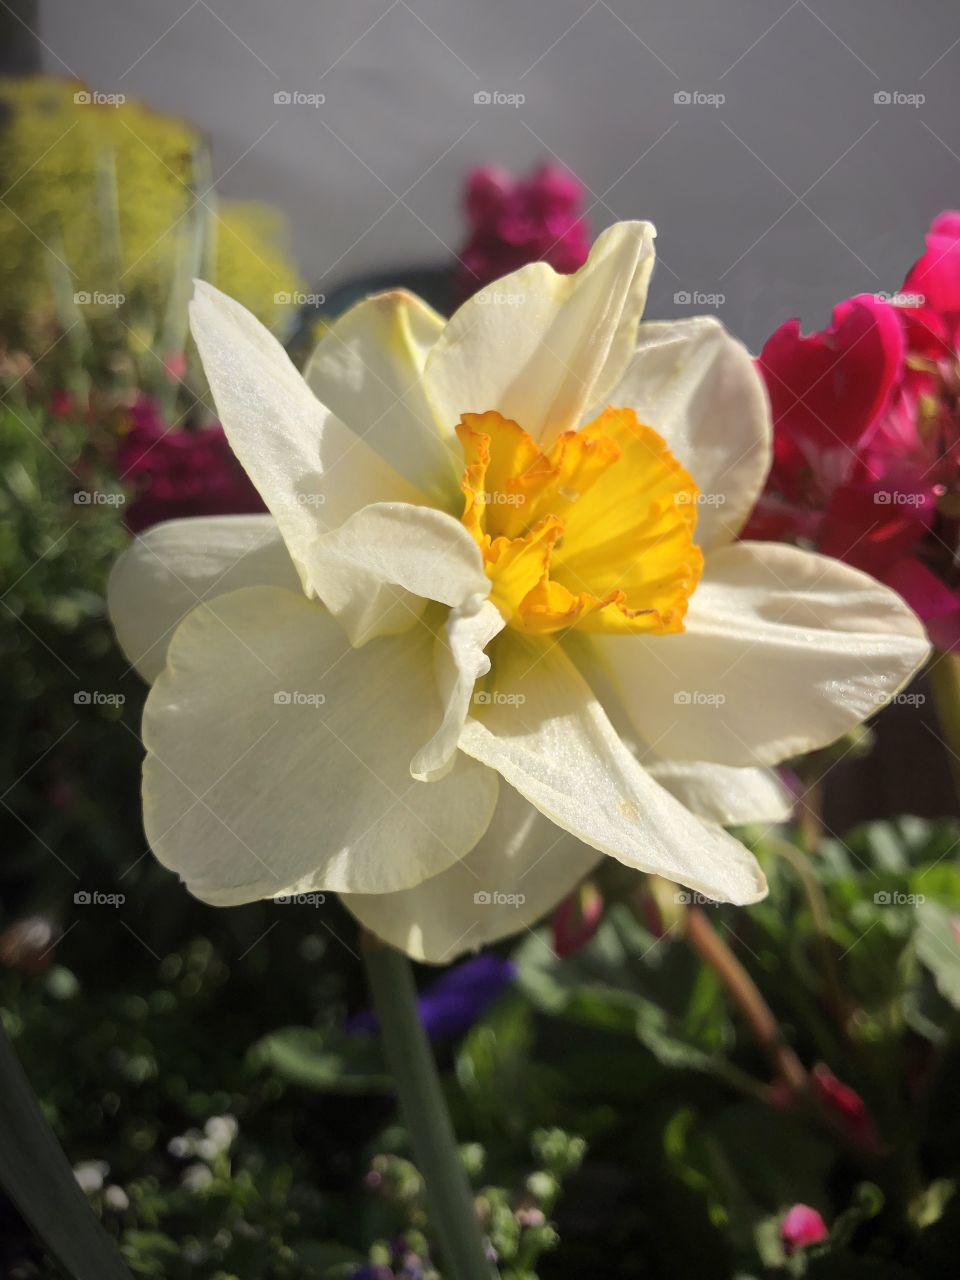 Daffodil Days